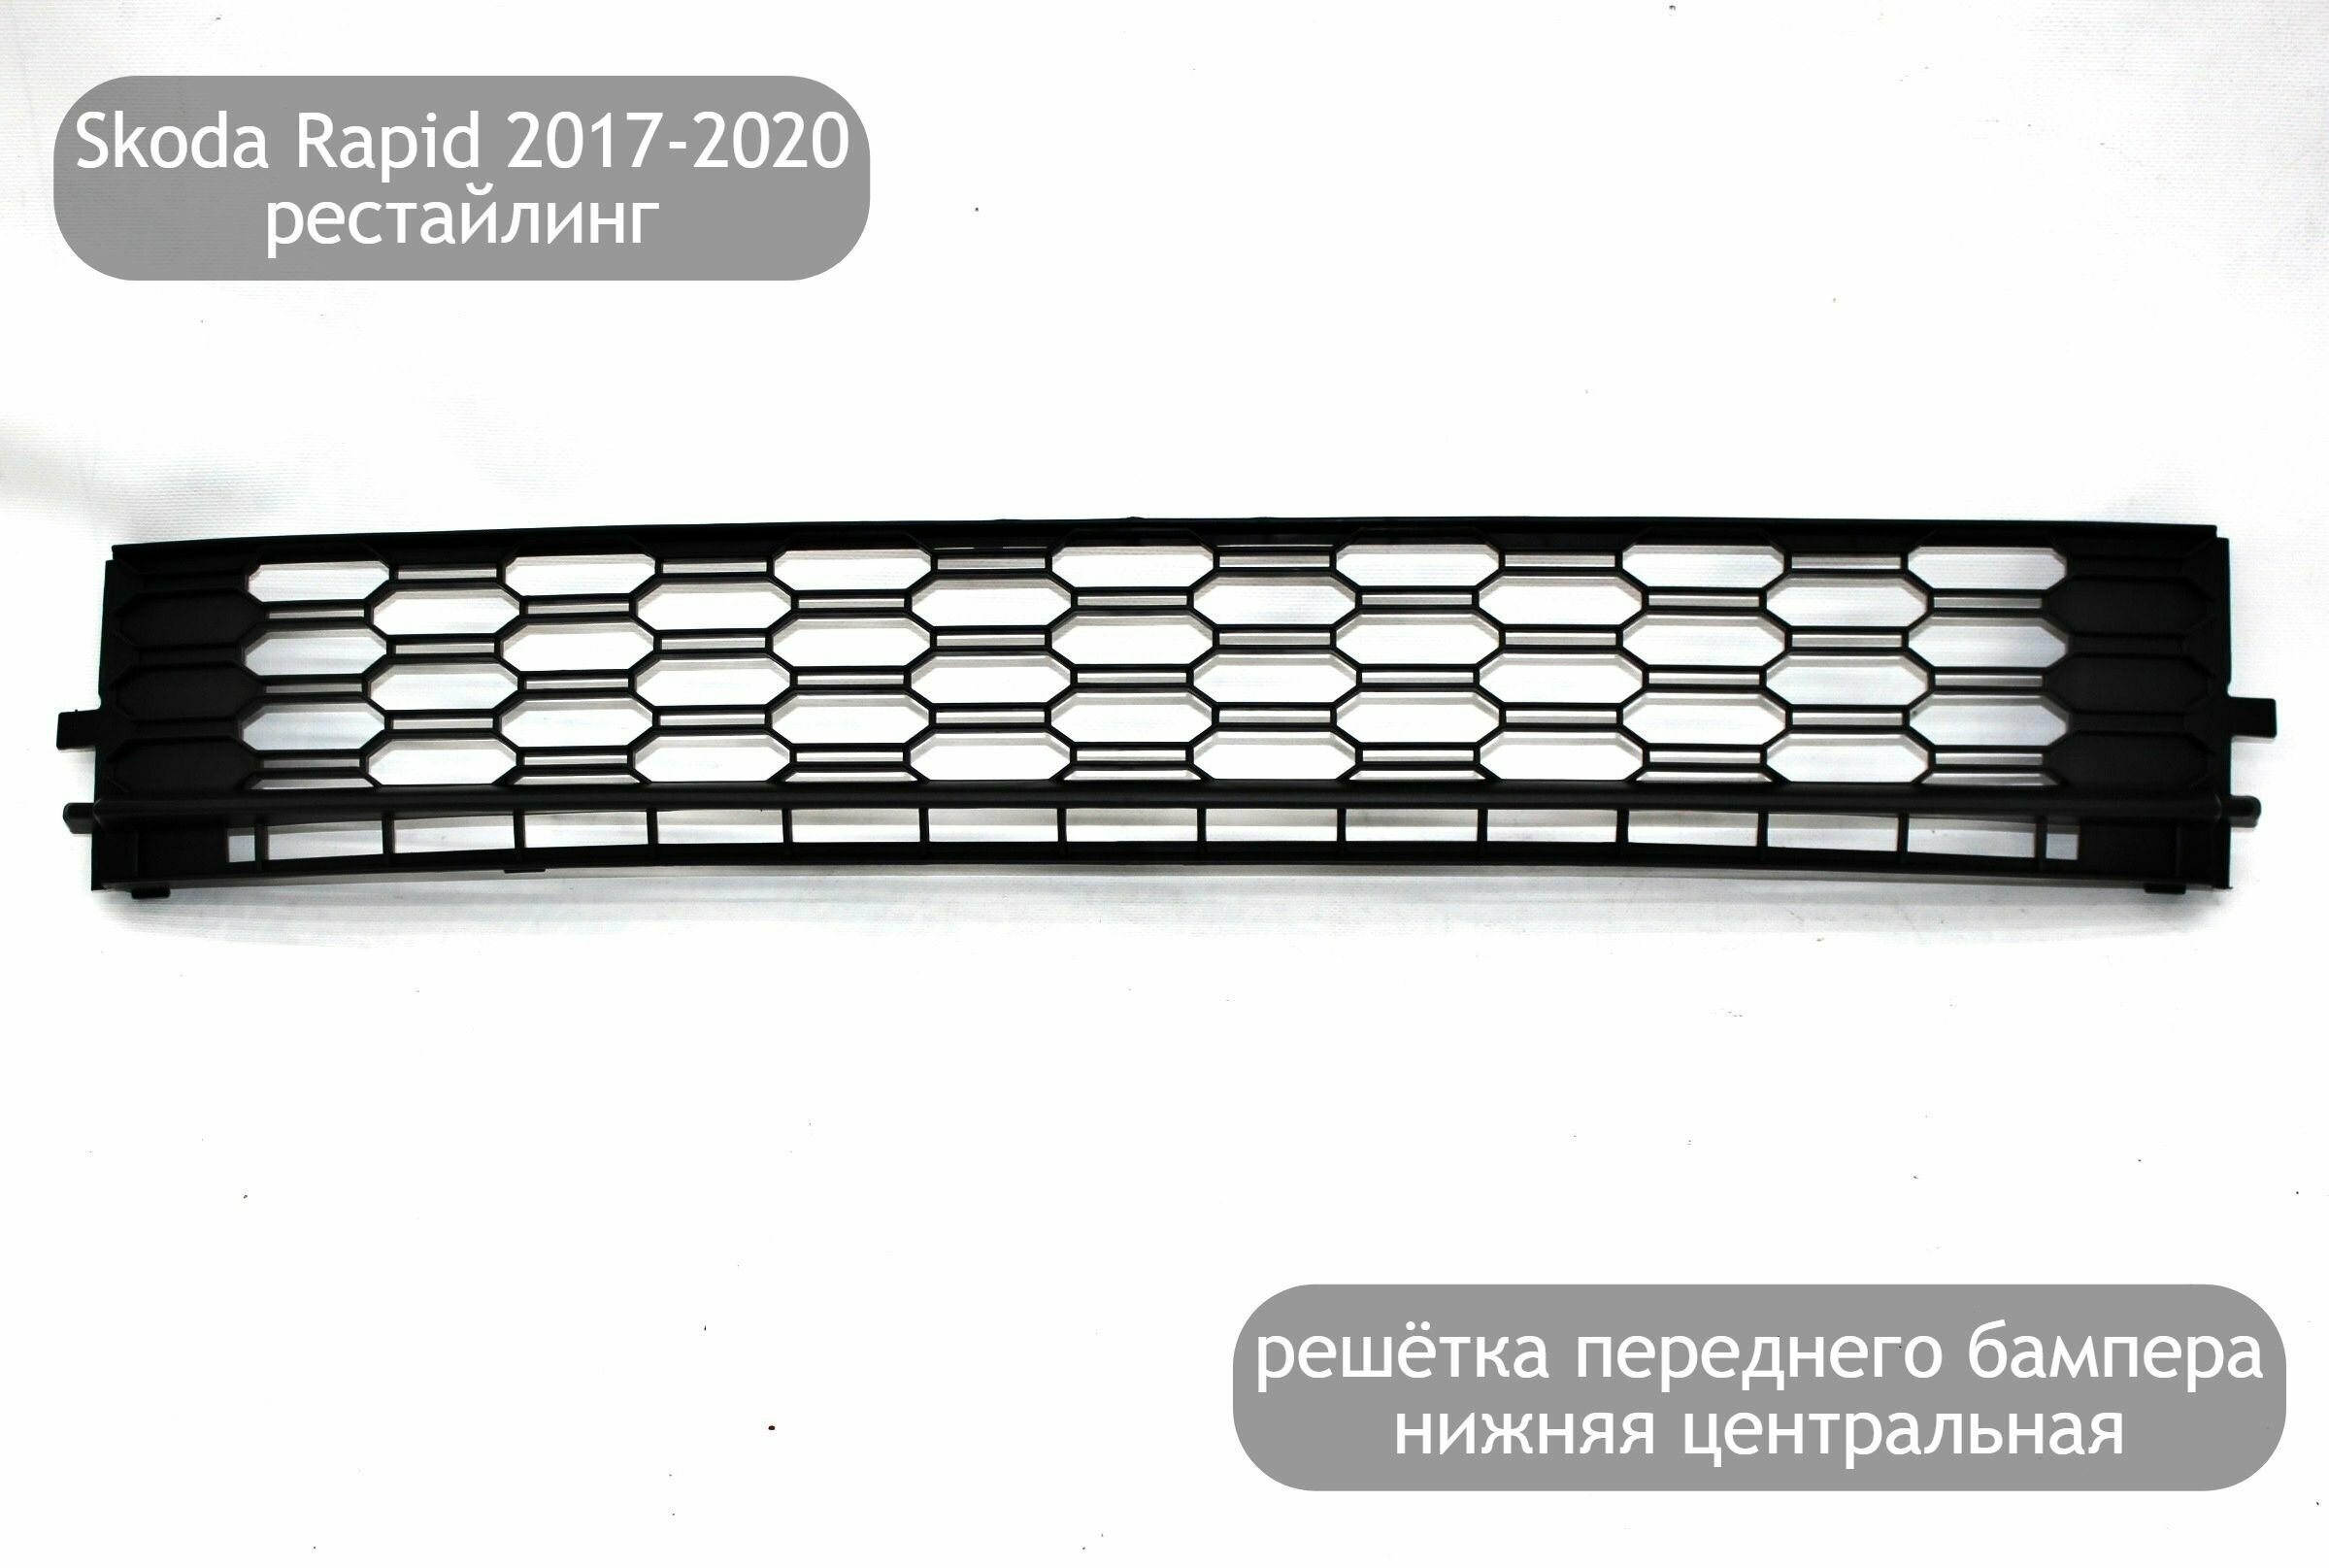 Решетка переднего бампера нижняя центральная для Skoda Rapid 2017-2020 (рестайлинг)